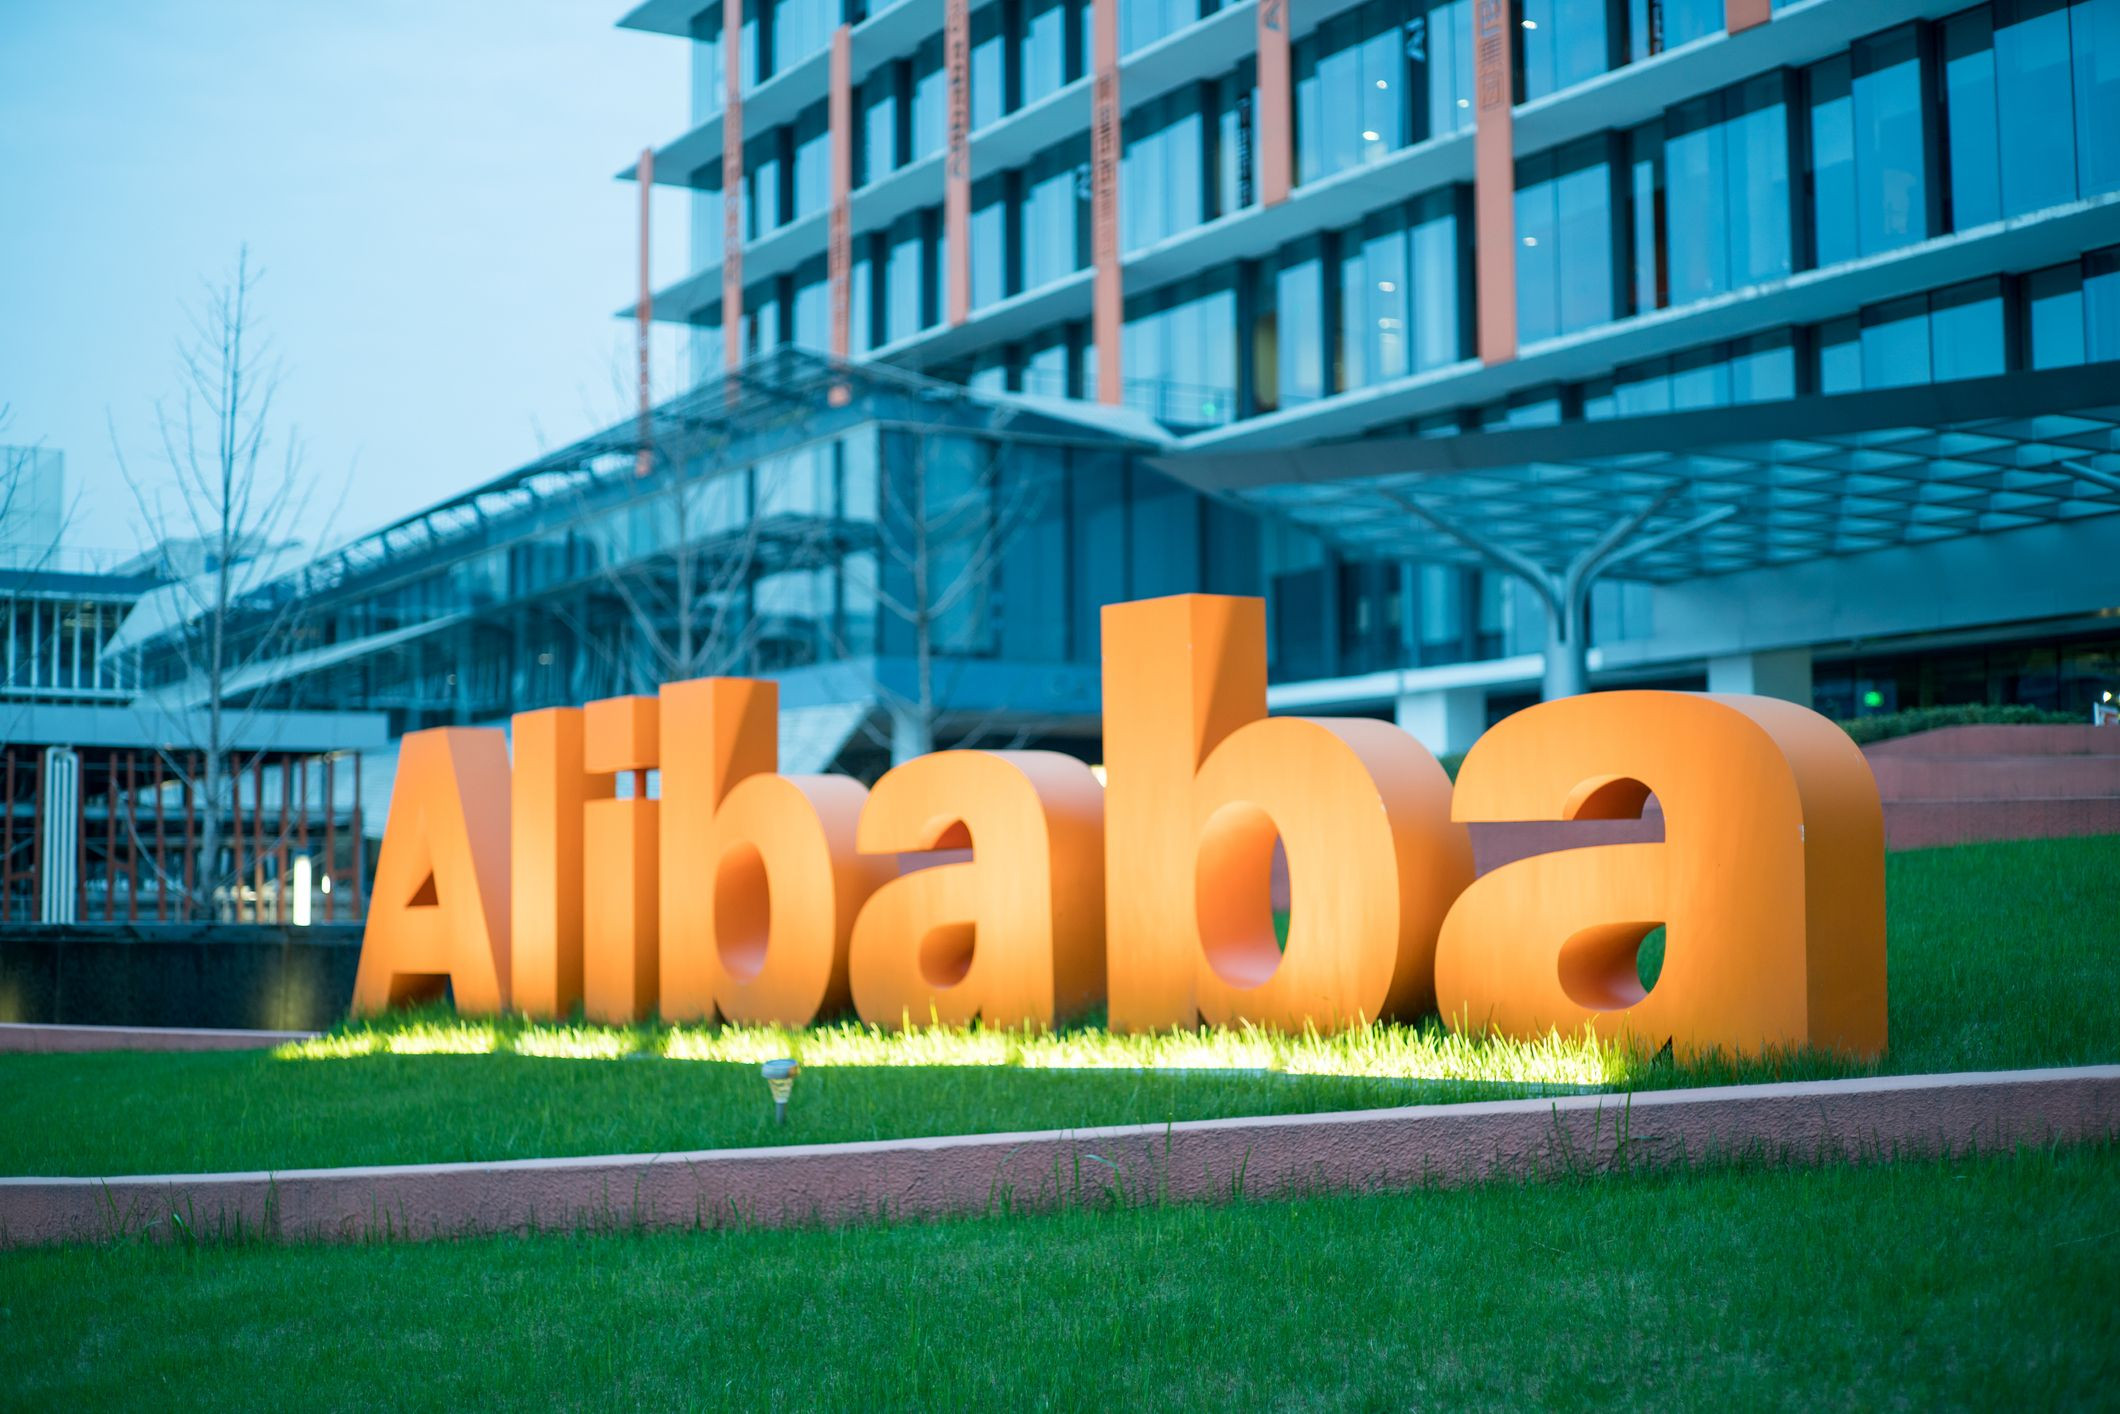 Alibaba yeniden yapılanıyor, 6 iş grubuna bölünüyor